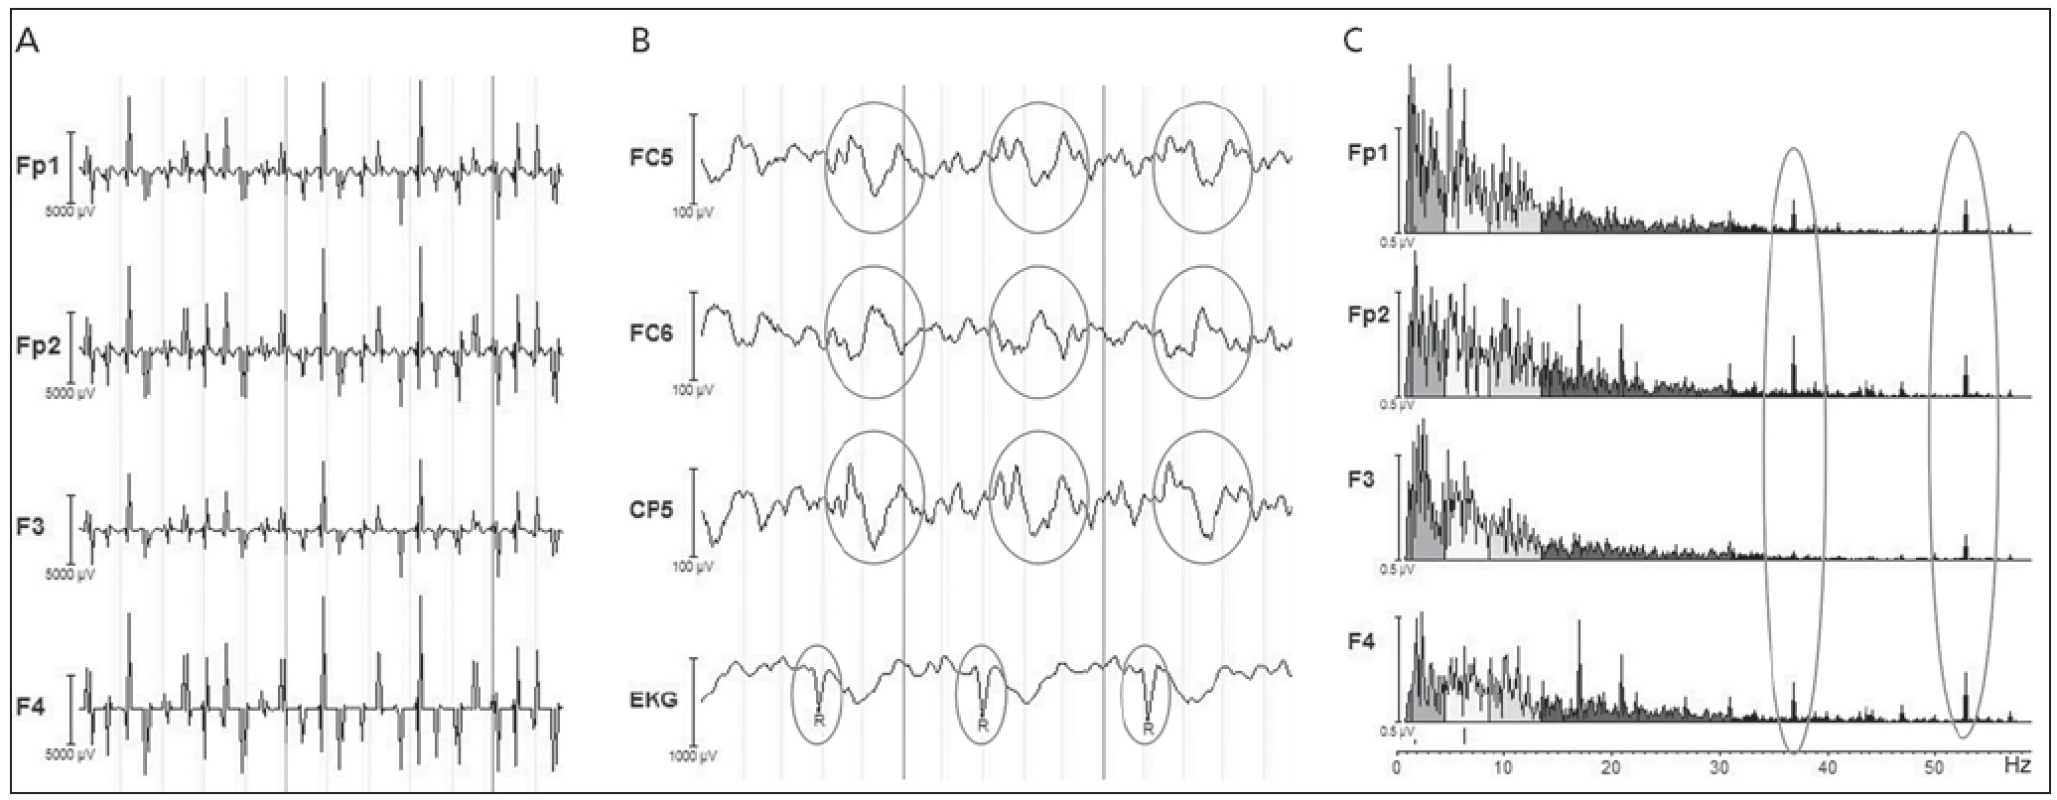 Artefakty v EEG signálu.
a) gradientní artefakt, b) pulzní artefakt, c) artefakt způsobený pumpou chladicí kapaliny ve formě špiček ve spektru EEG signálu, typicky kolem 40 Hz.